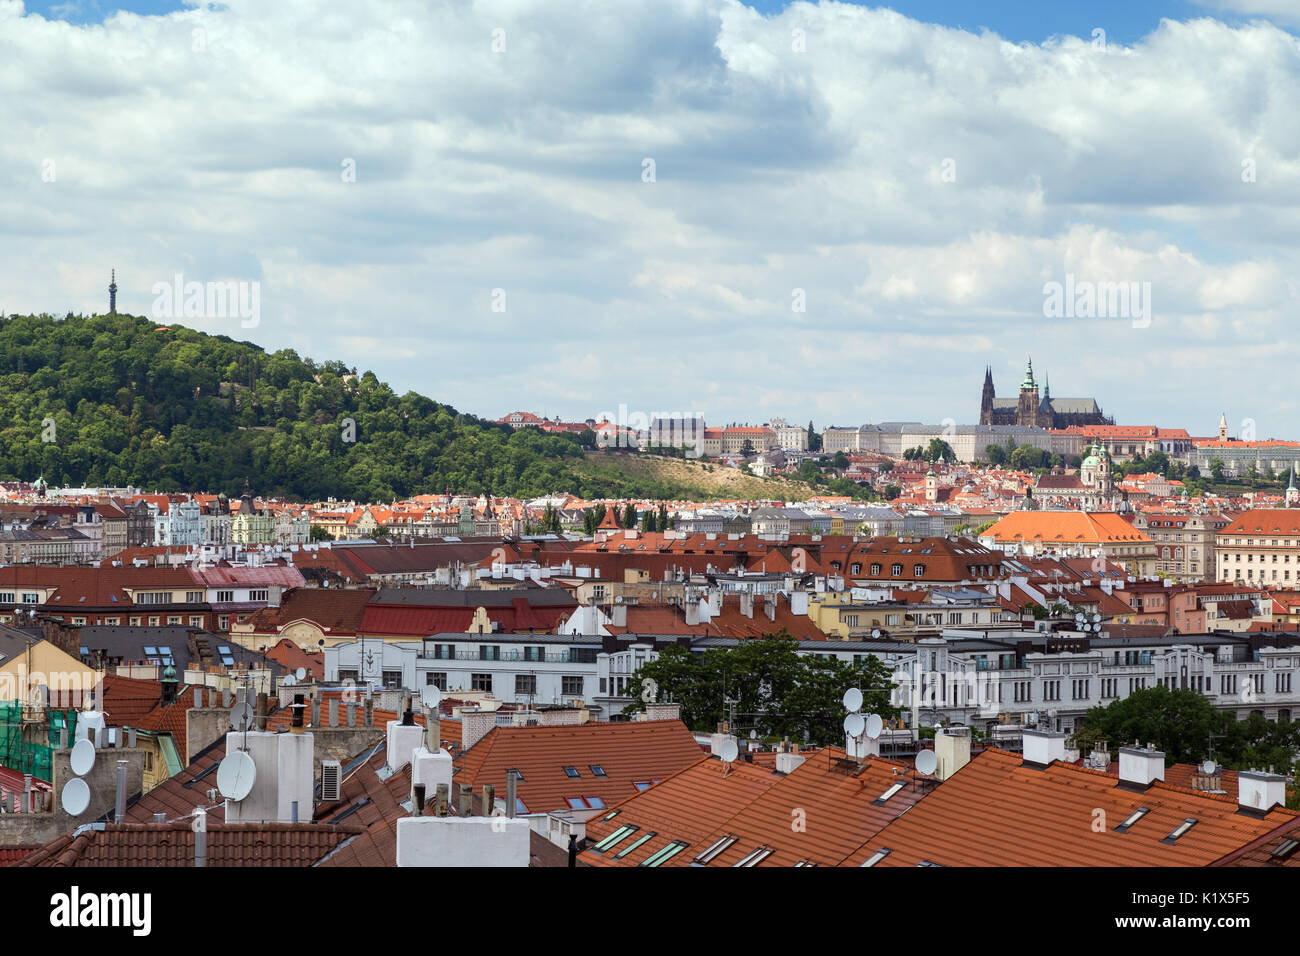 La colline de Petrin, à Prague (Hradcany) château et de vieux bâtiments à Prague, République tchèque, vu du fort de Vysehrad. Banque D'Images